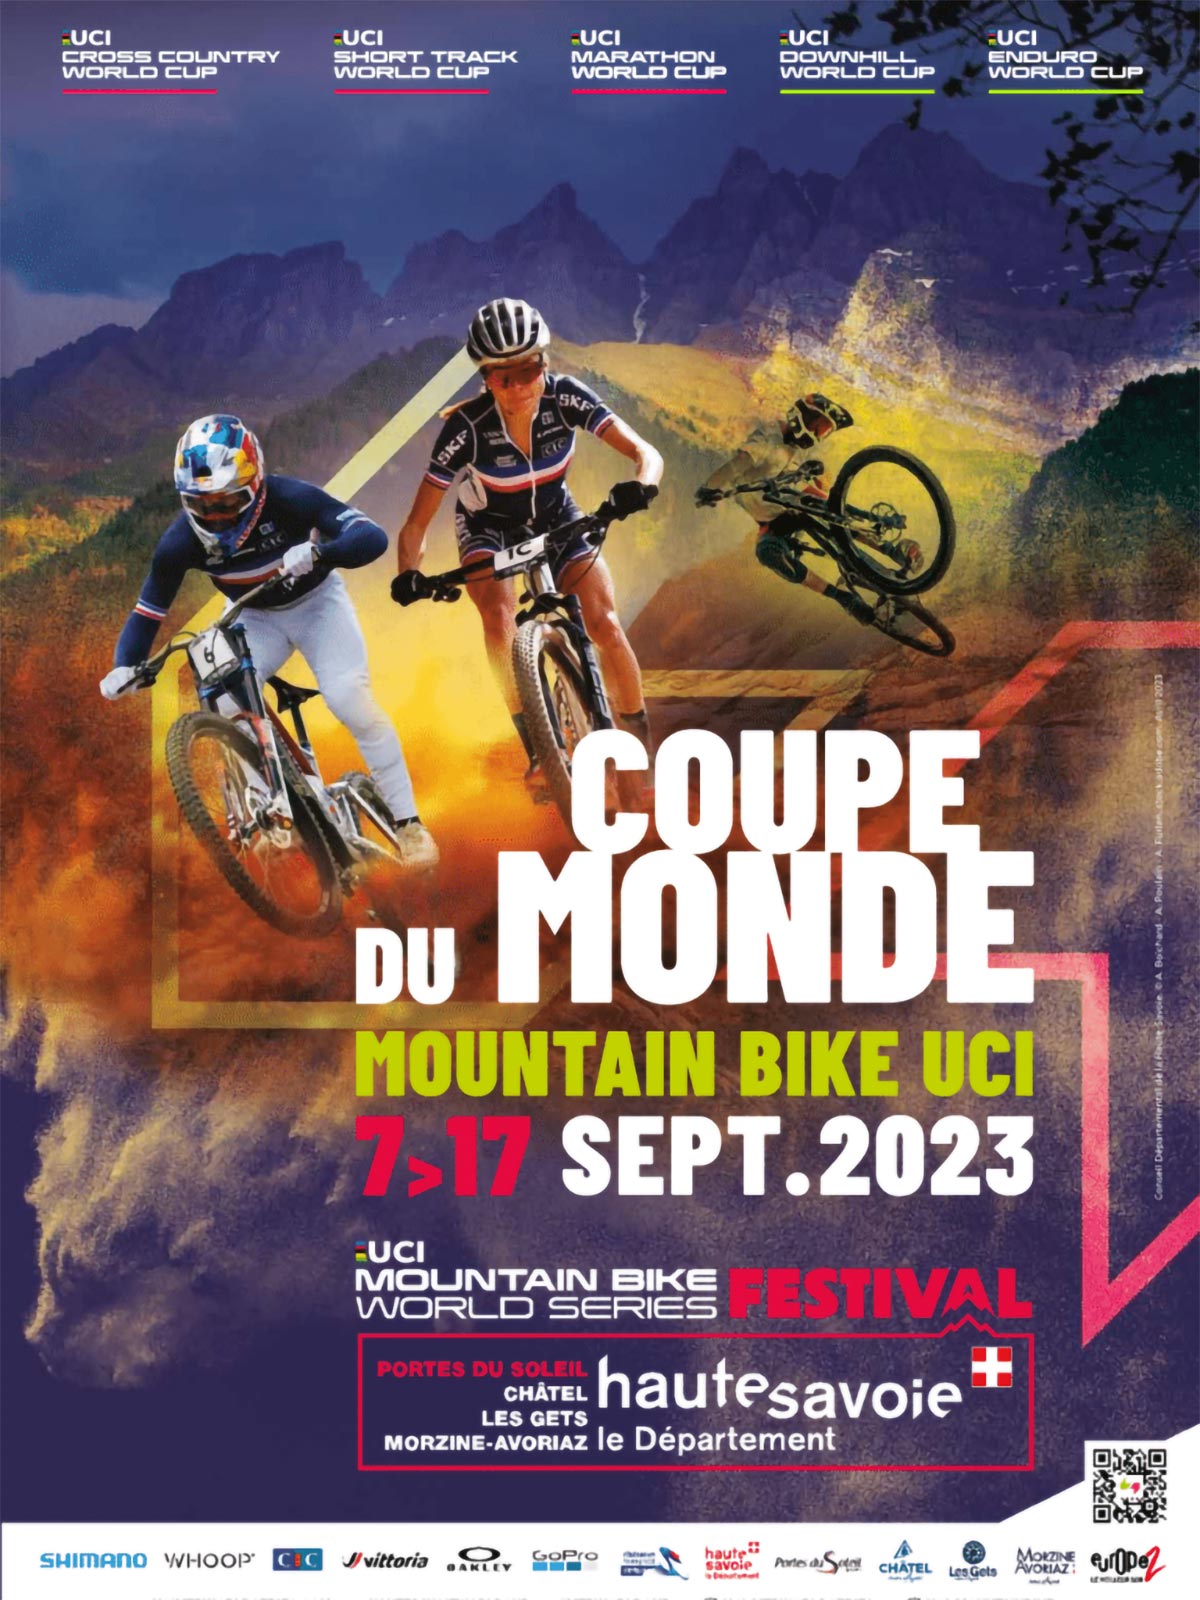 La Copa del Mundo de Mountain Bike 2023 llega a Les Gets: programa de carreras y dónde ver